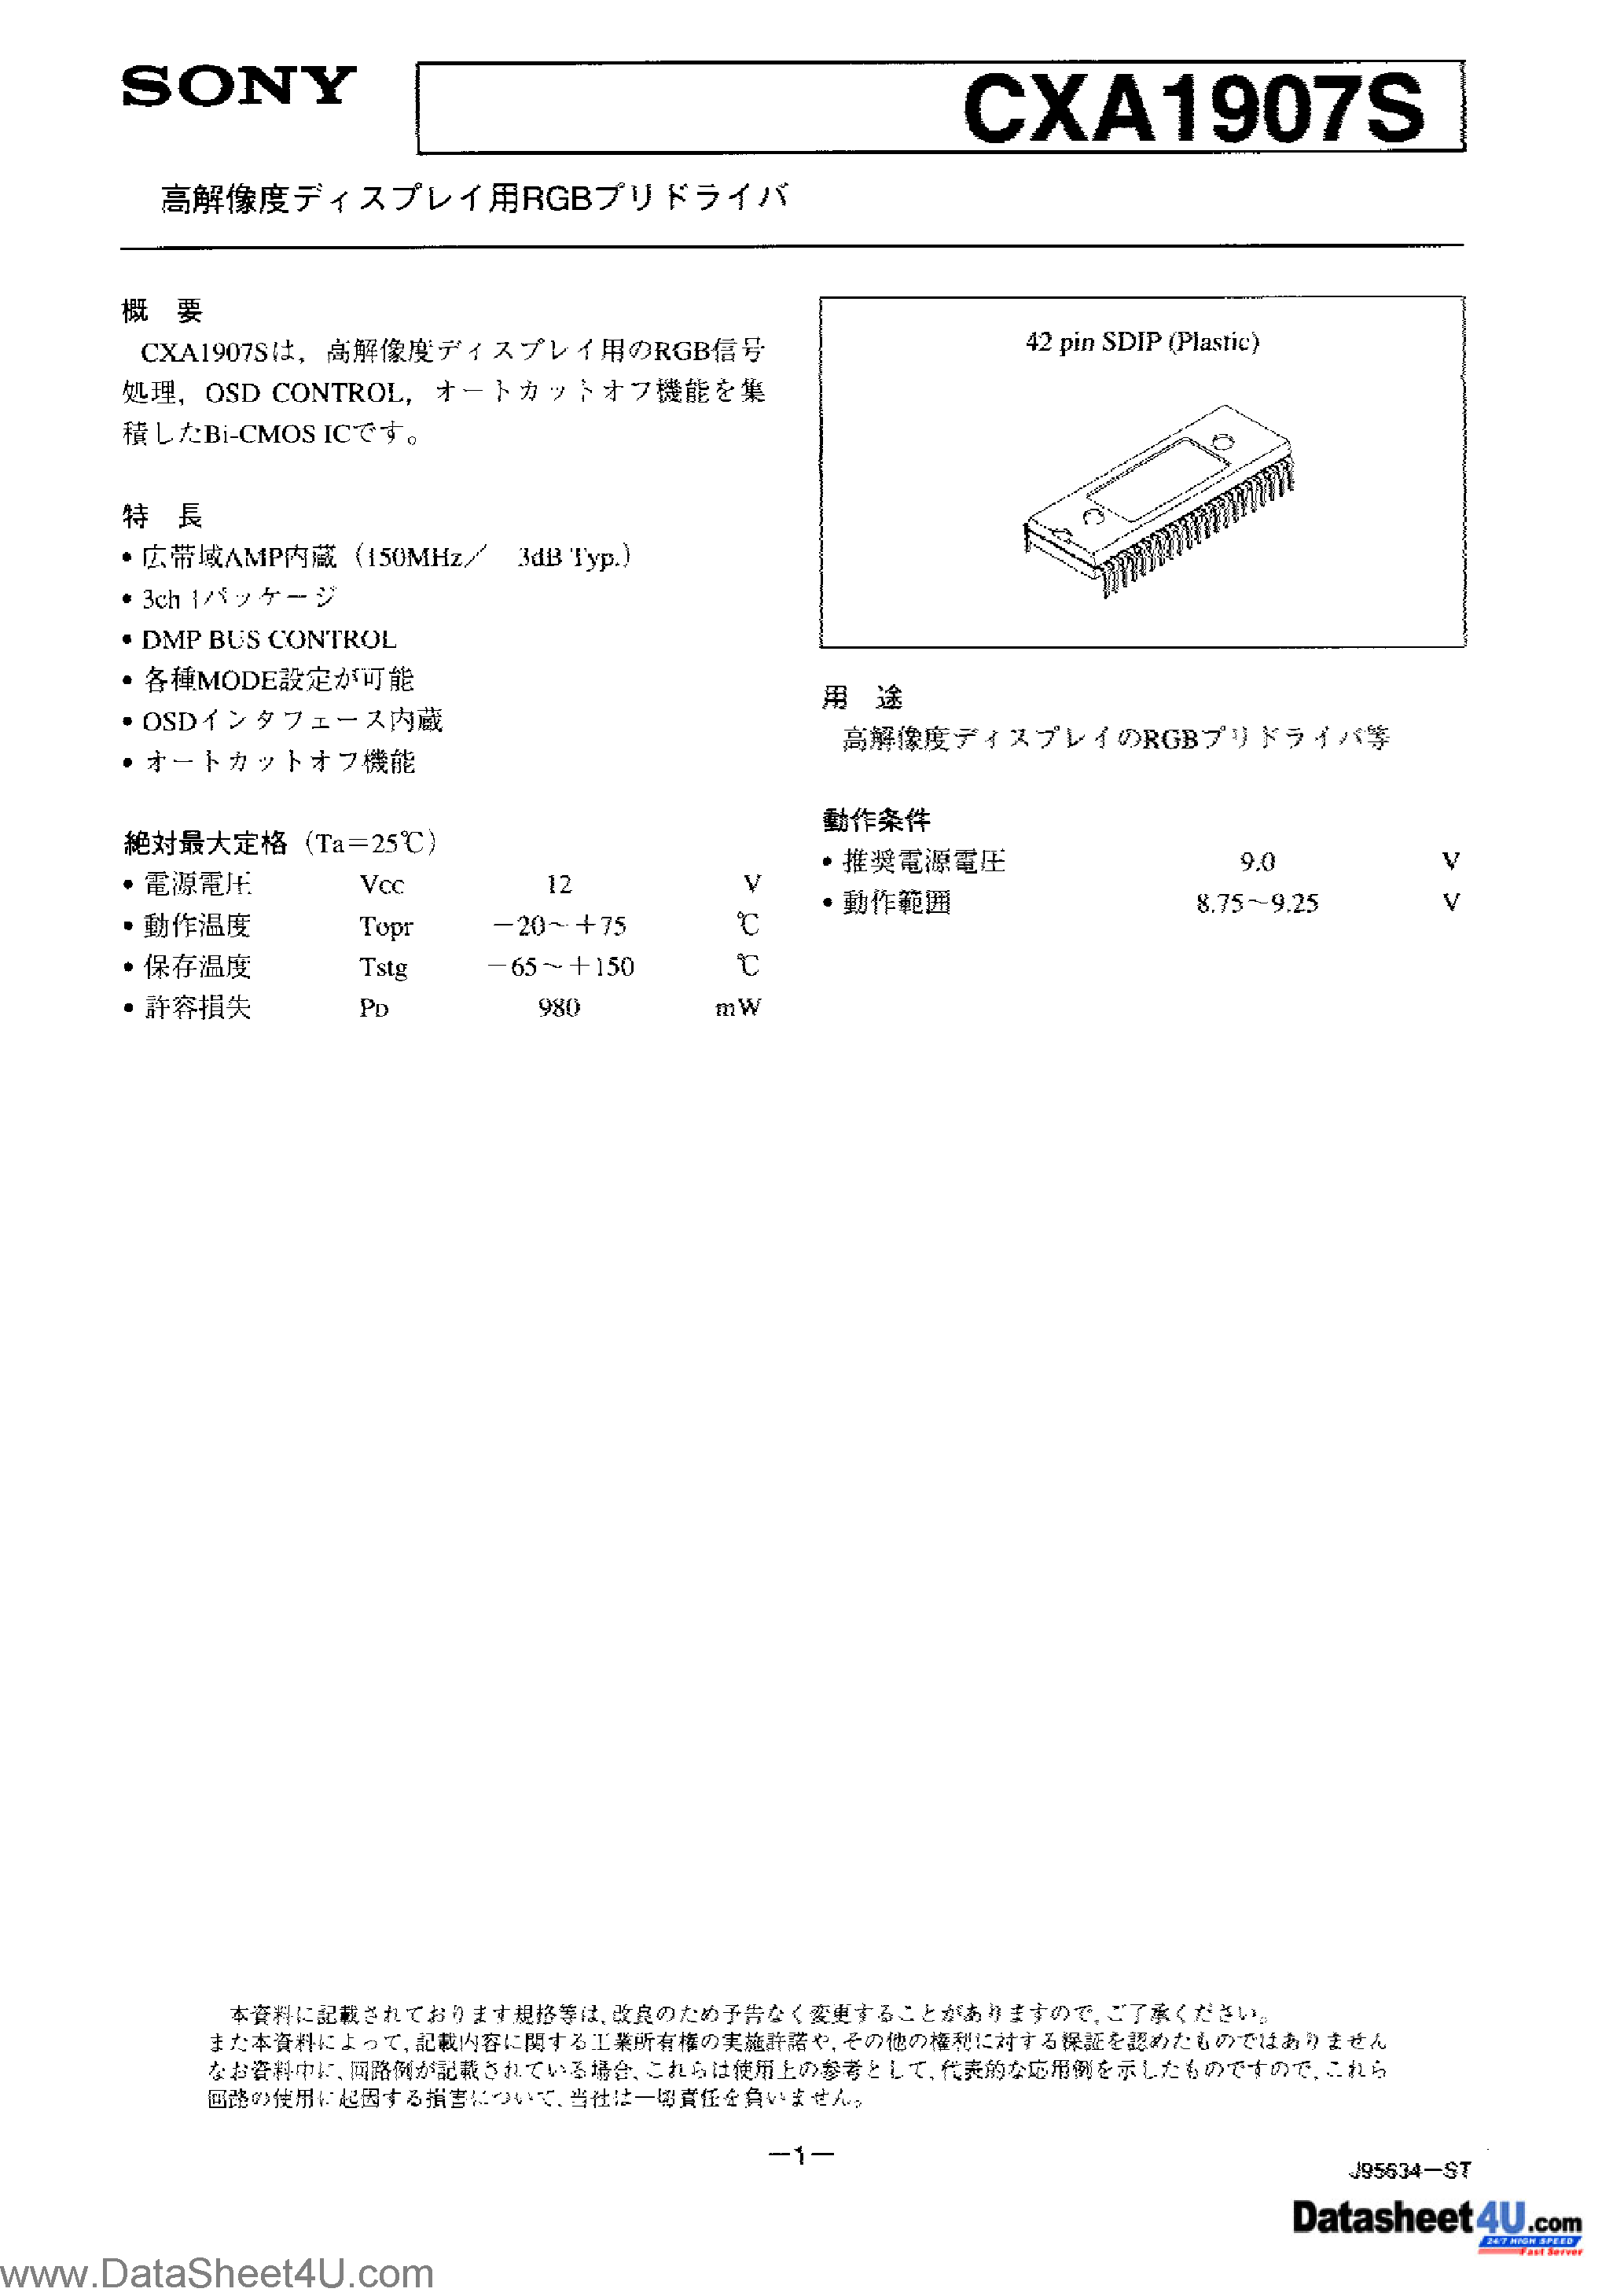 Datasheet CXA1907S - CXA1907S Japanese page 1